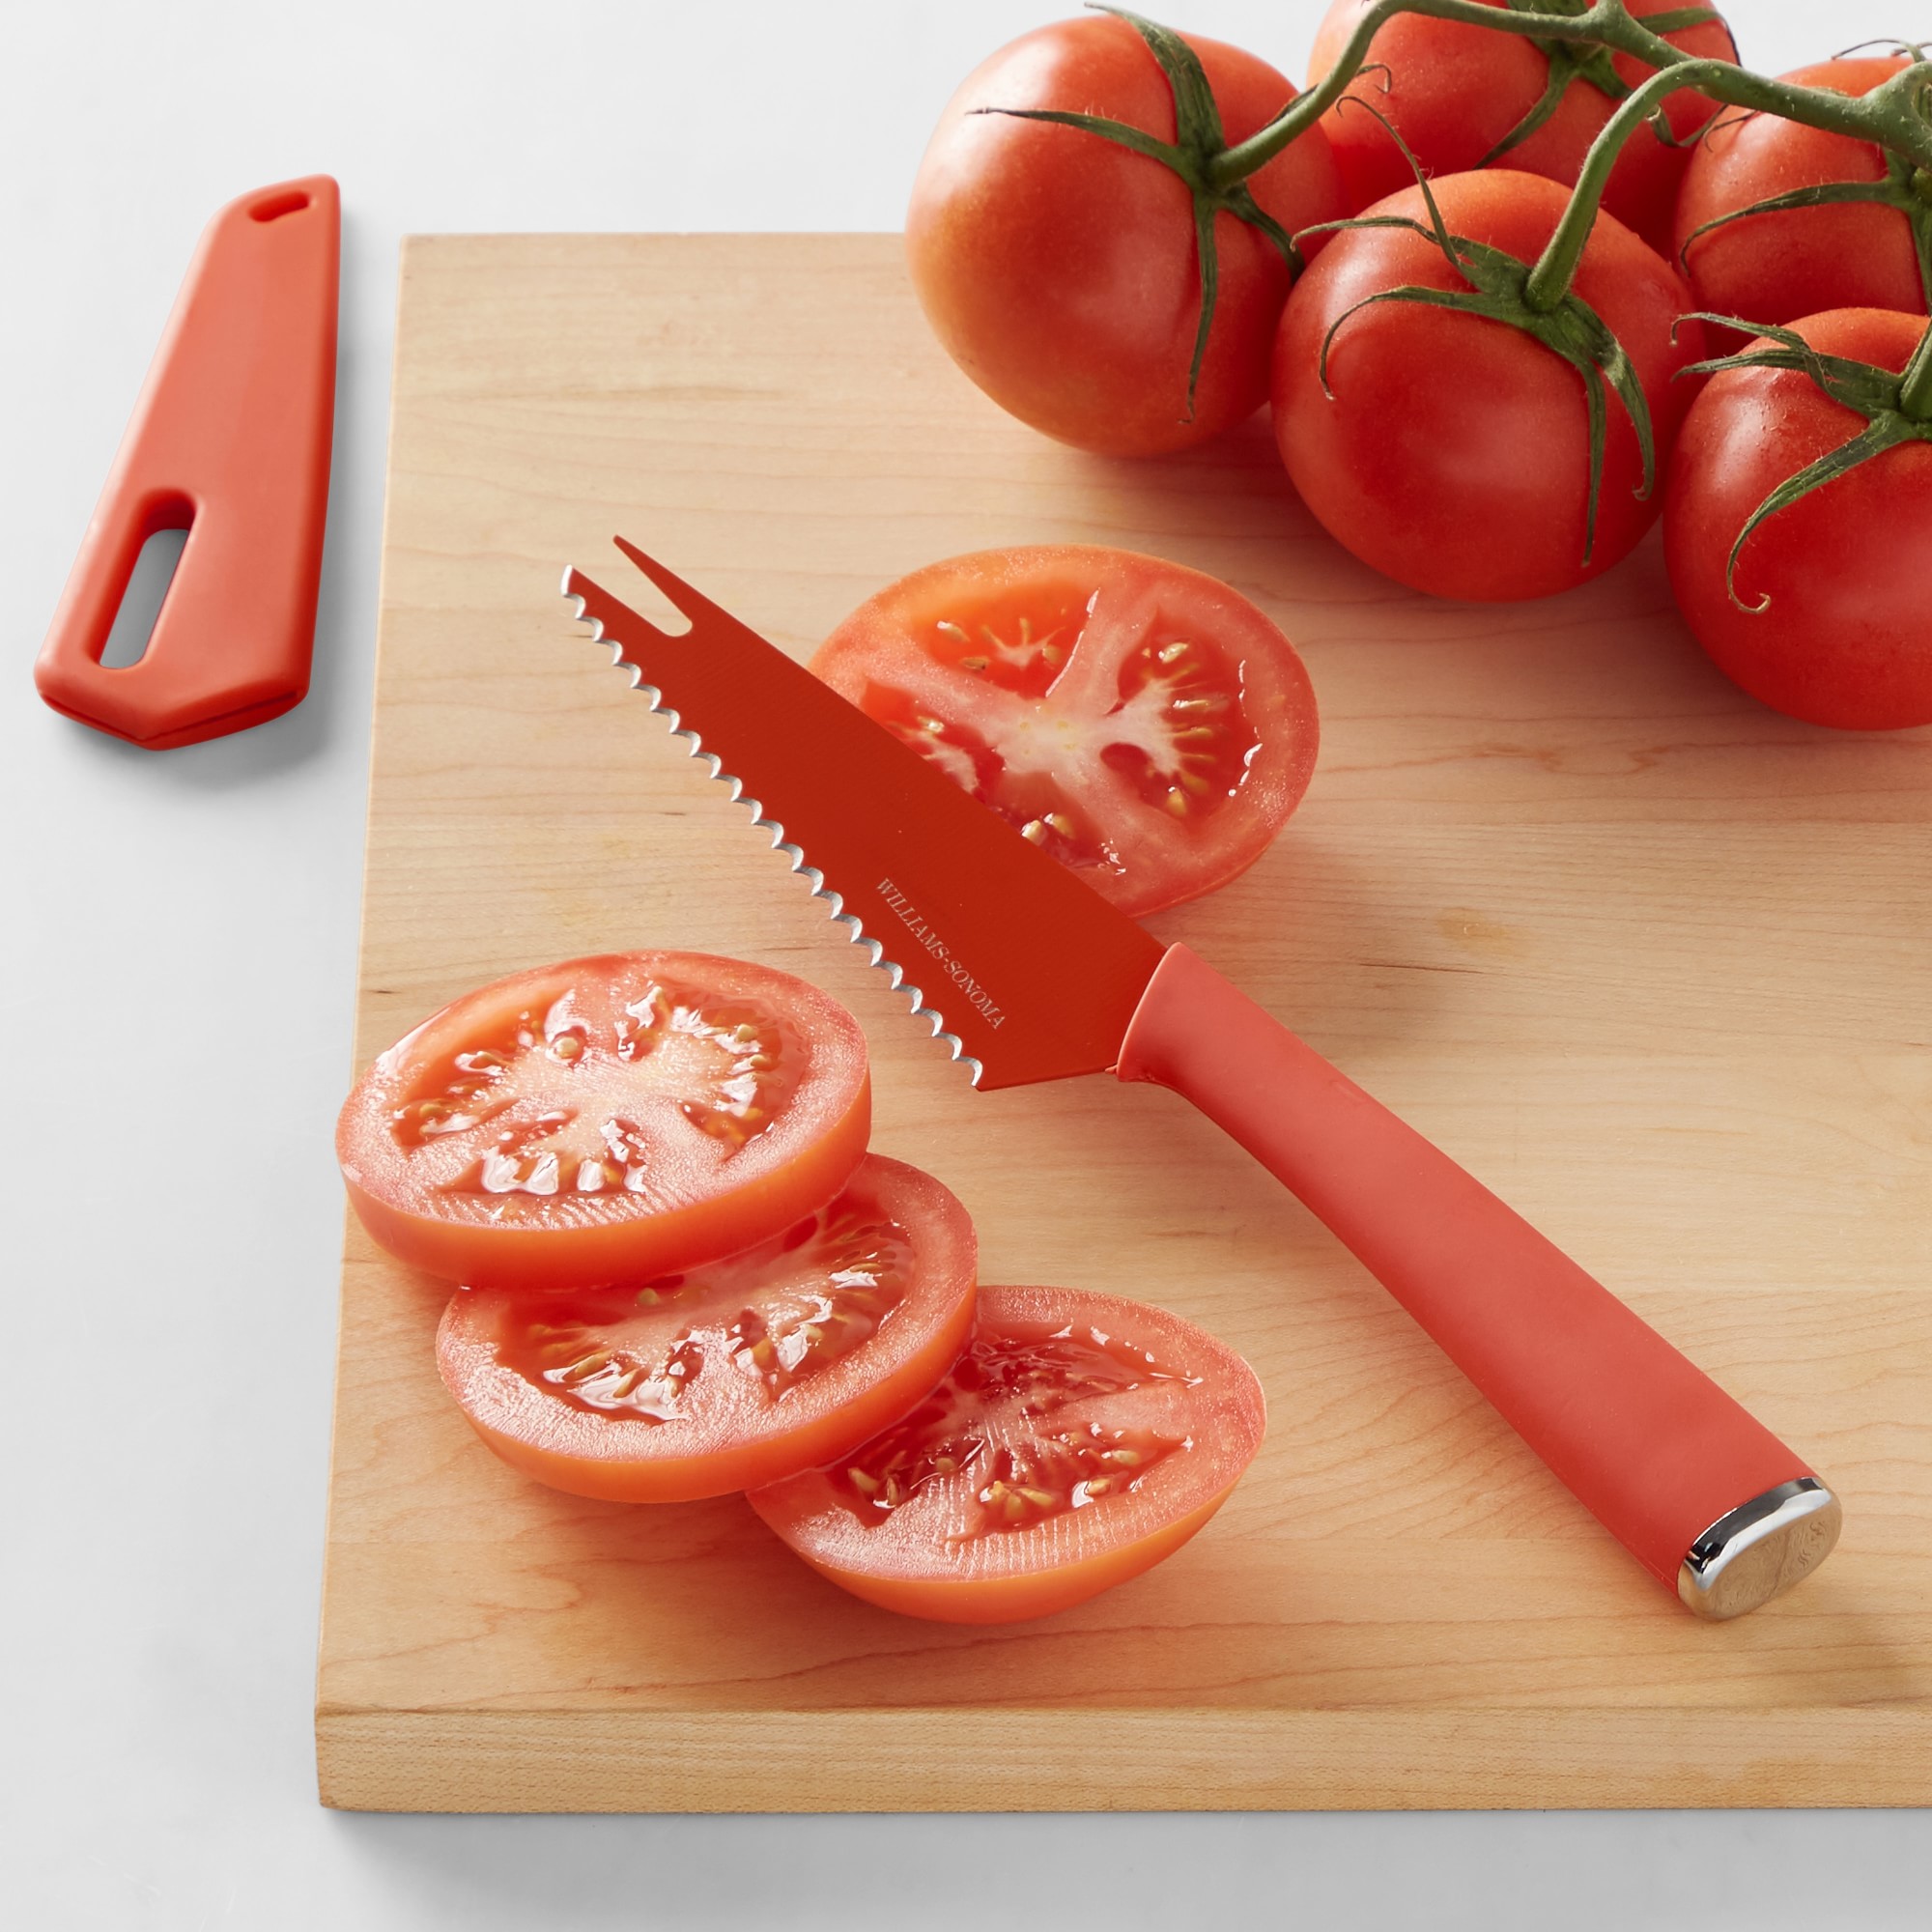 Williams Sonoma Tomato Knife, 9 1/4"